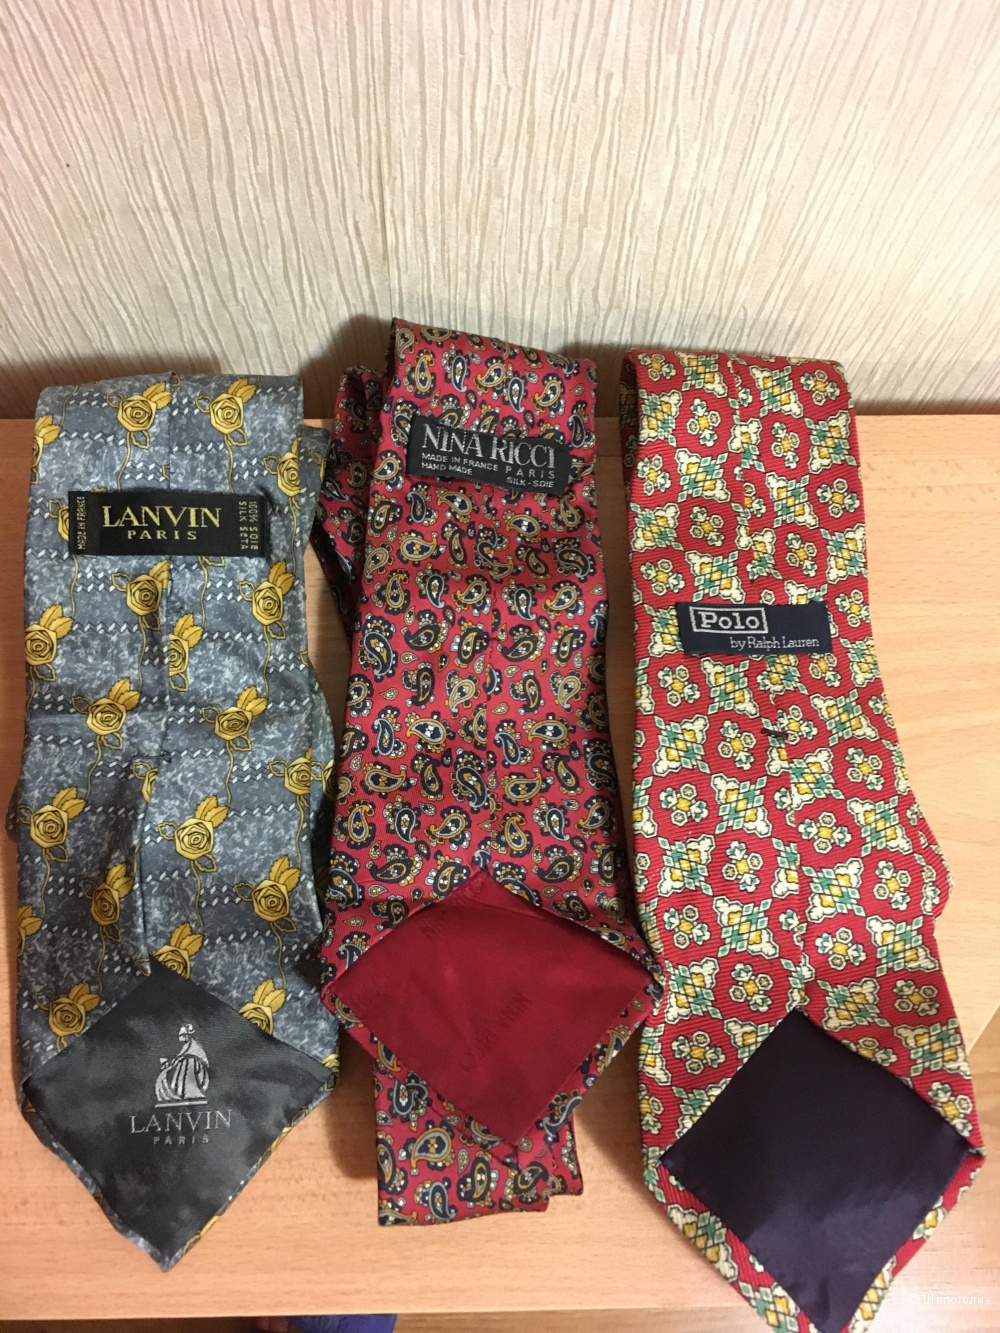 Комплектом три шелковых галстука  Ralph Lauren, Nina Ricci, Lanvin.